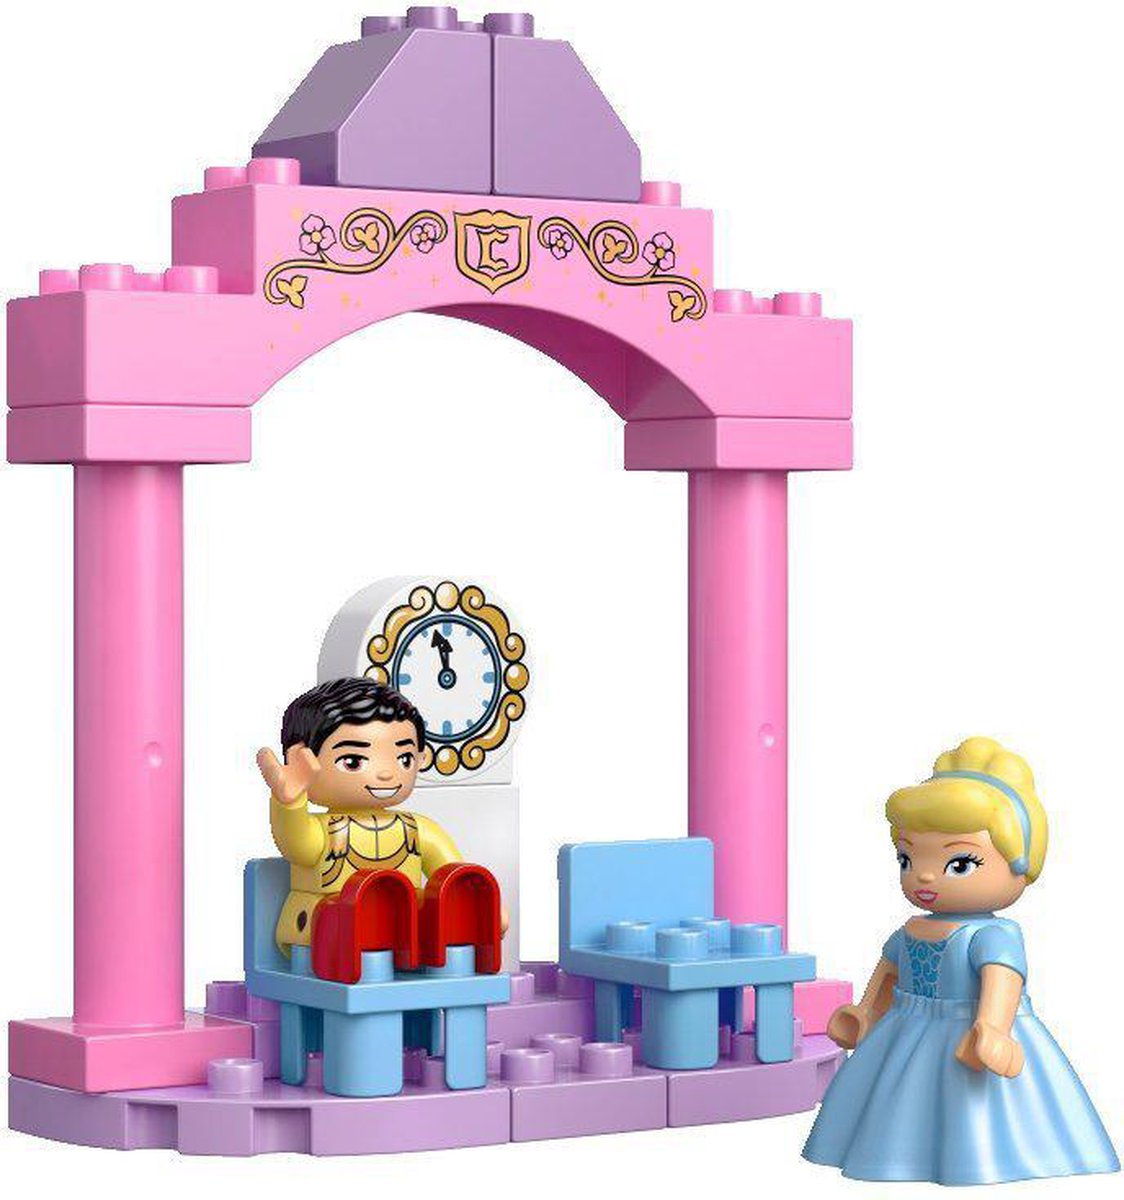 Voorverkoop Kanon Verslagen LEGO Duplo Disney Princess Assepoester's Kasteel - 6154 | bol.com